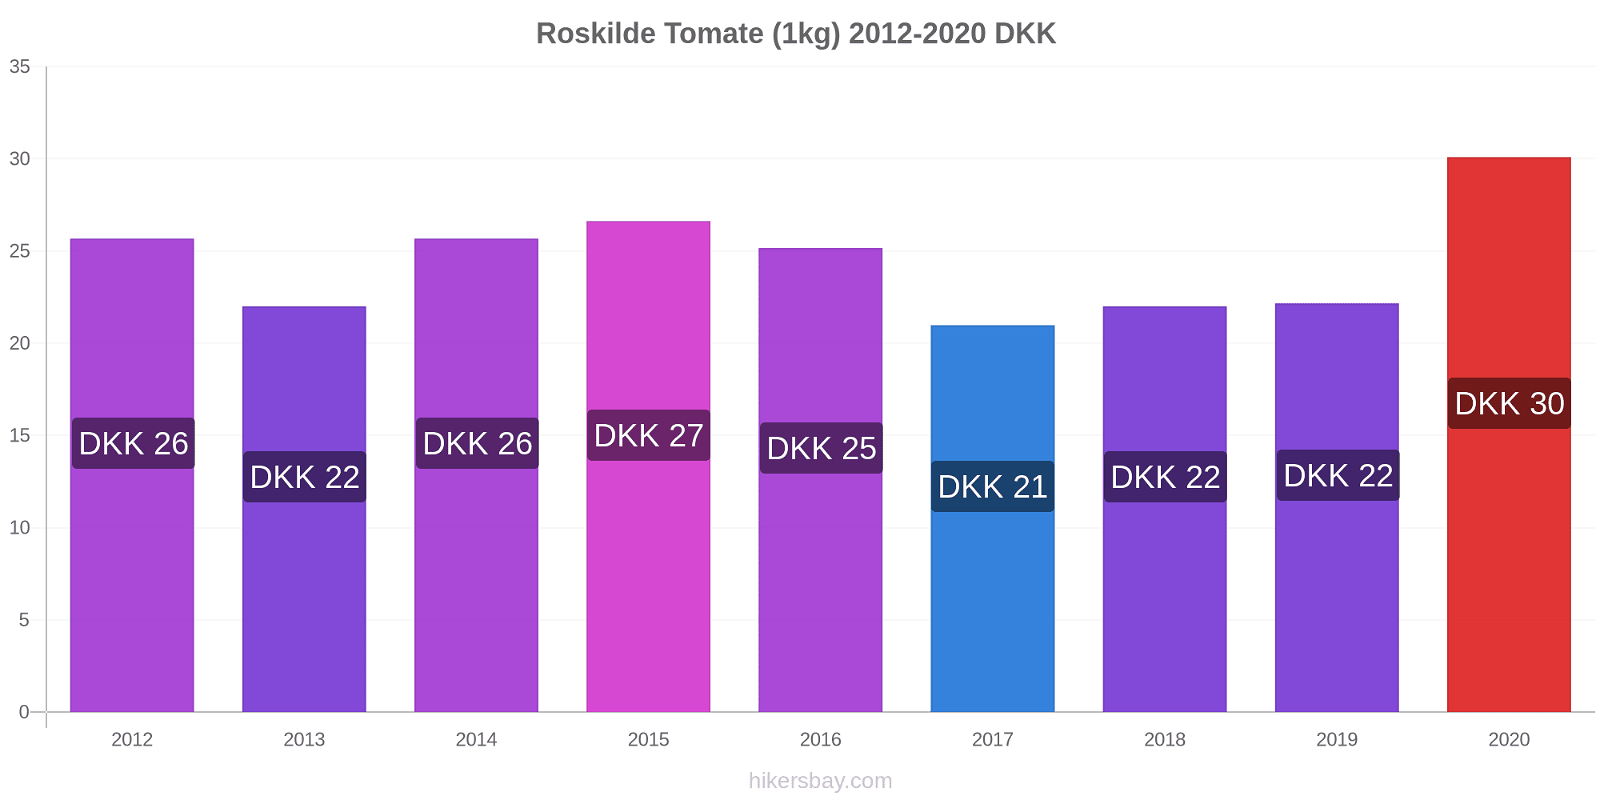 Roskilde modificări de preț Tomate (1kg) hikersbay.com